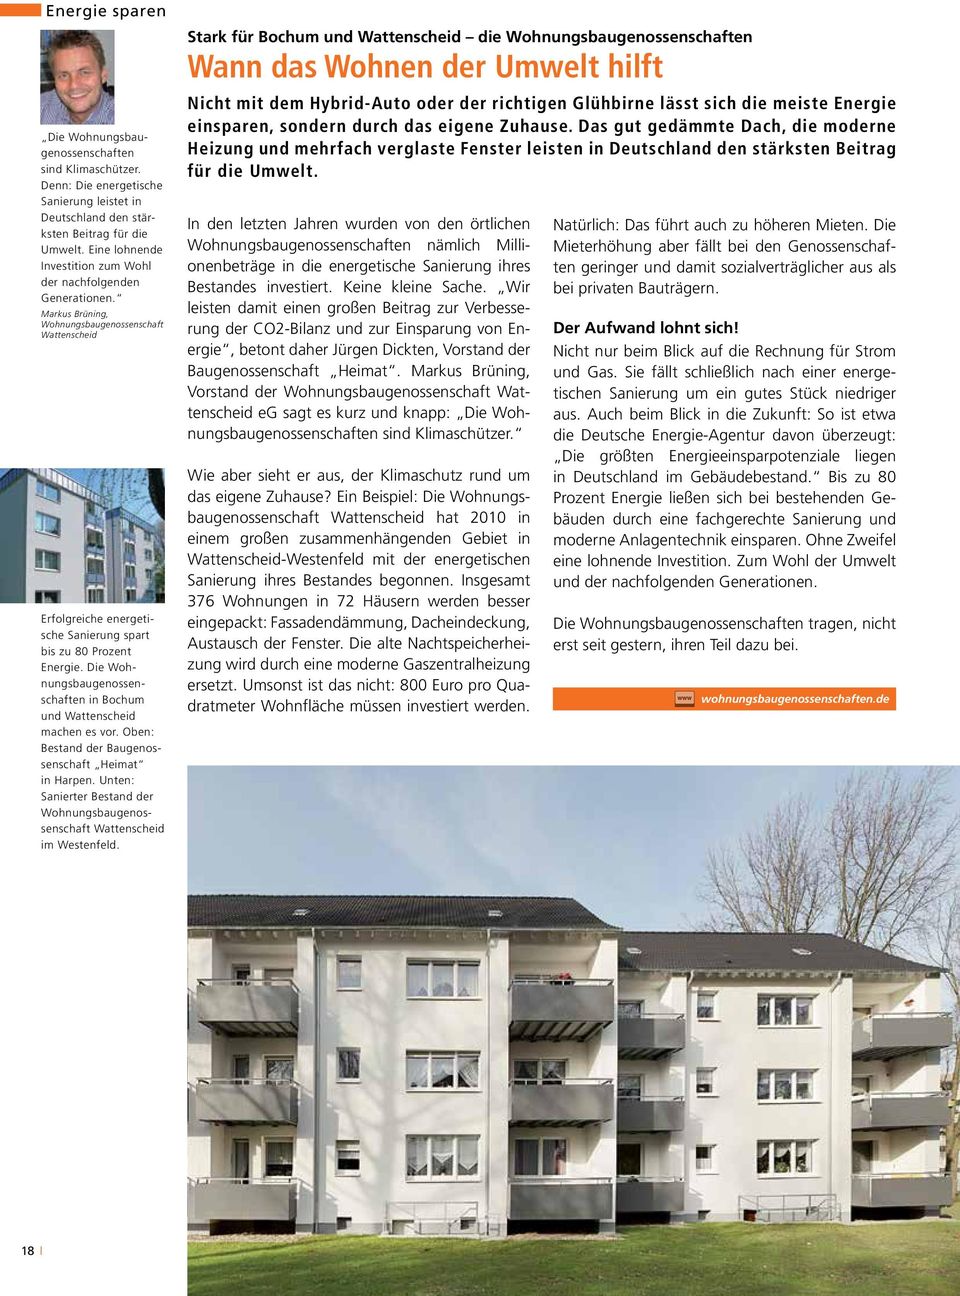 Die Wohnungs bau genos senschaften in Bochum und Wattenscheid machen es vor. Oben: Bestand der Baugenossenschaft Heimat in Harpen.